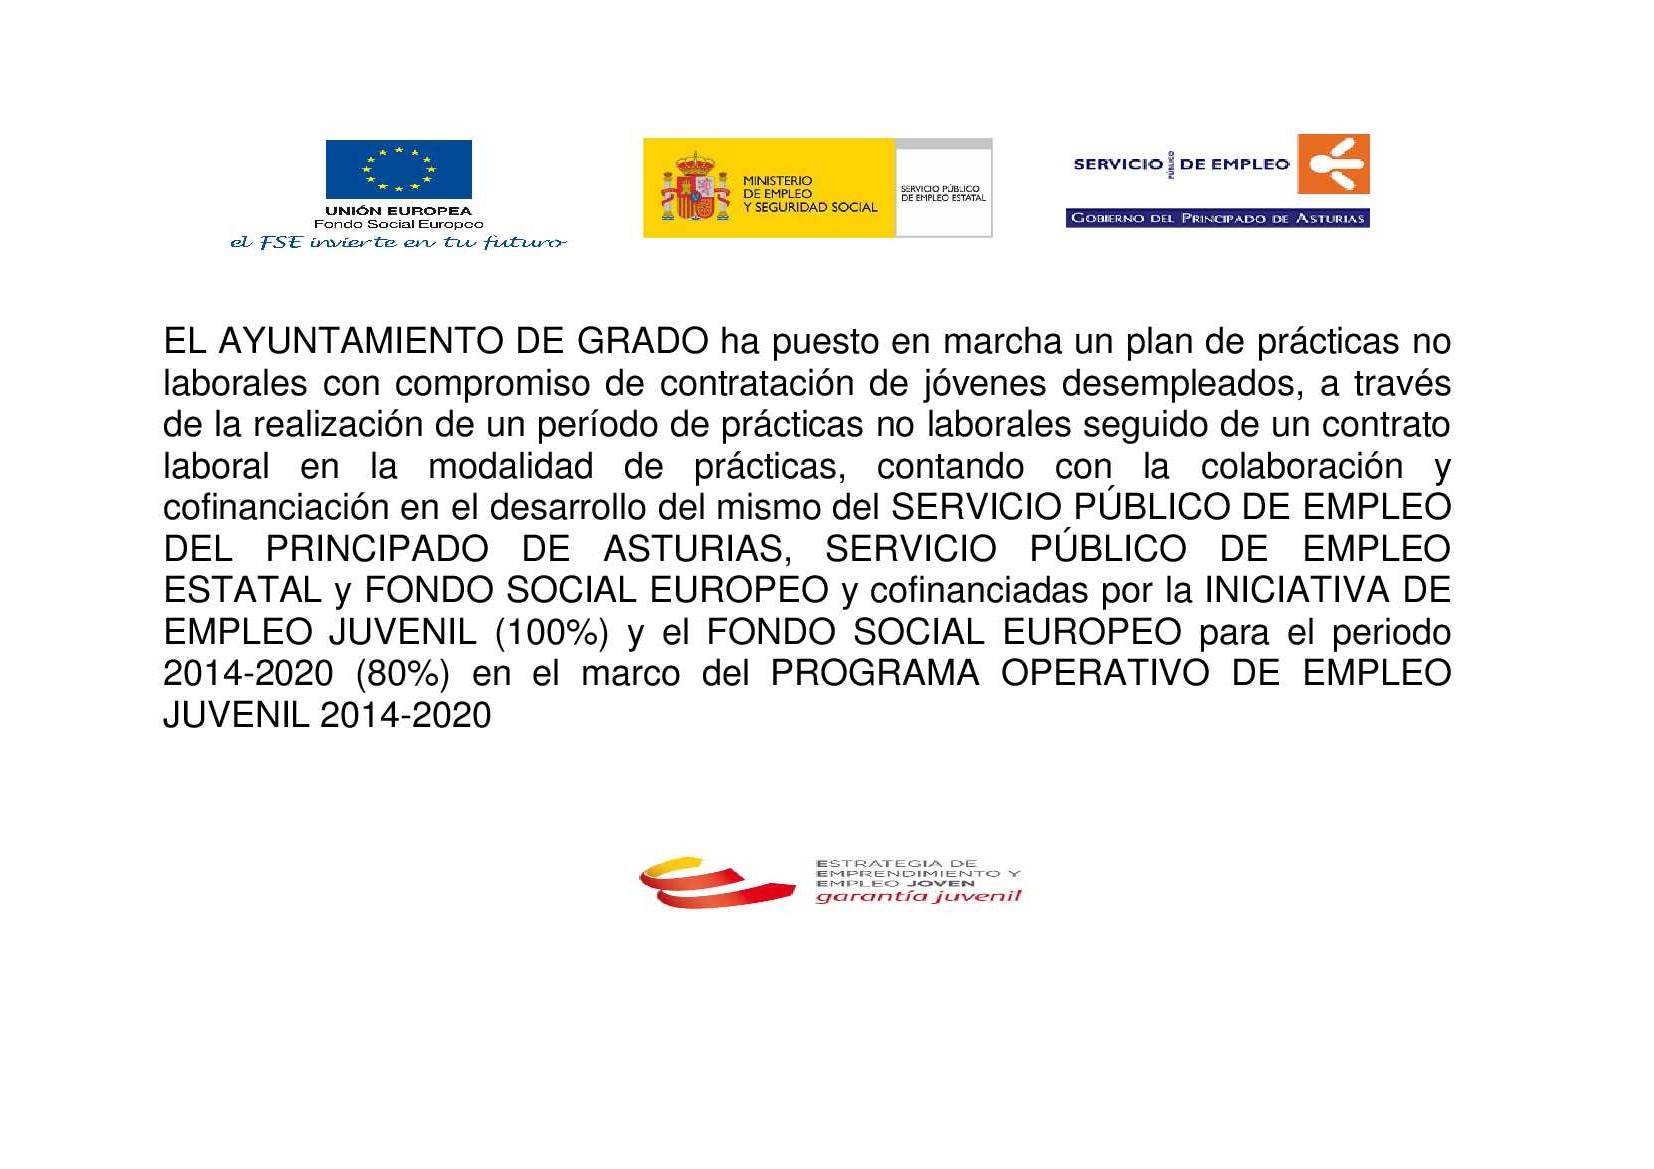 Cartel Programa Operativo de Empleo Juvenil 2014-2015